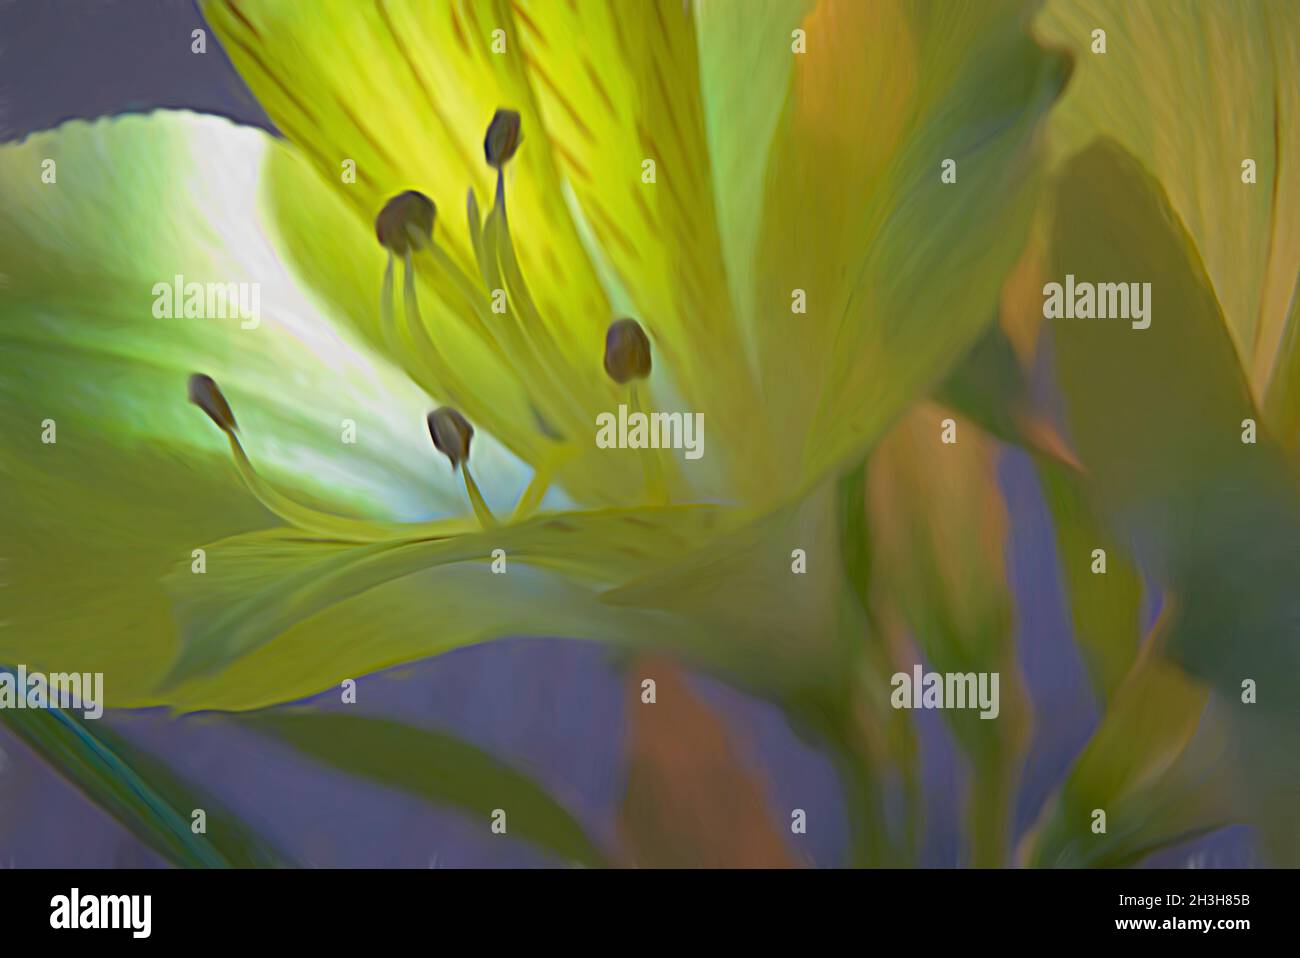 Imagen macro abstracta de la flor amarilla de alstroemeria. Los pétalos borrosos son retroiluminados, arrojando luz suave sobre los estambres Foto de stock